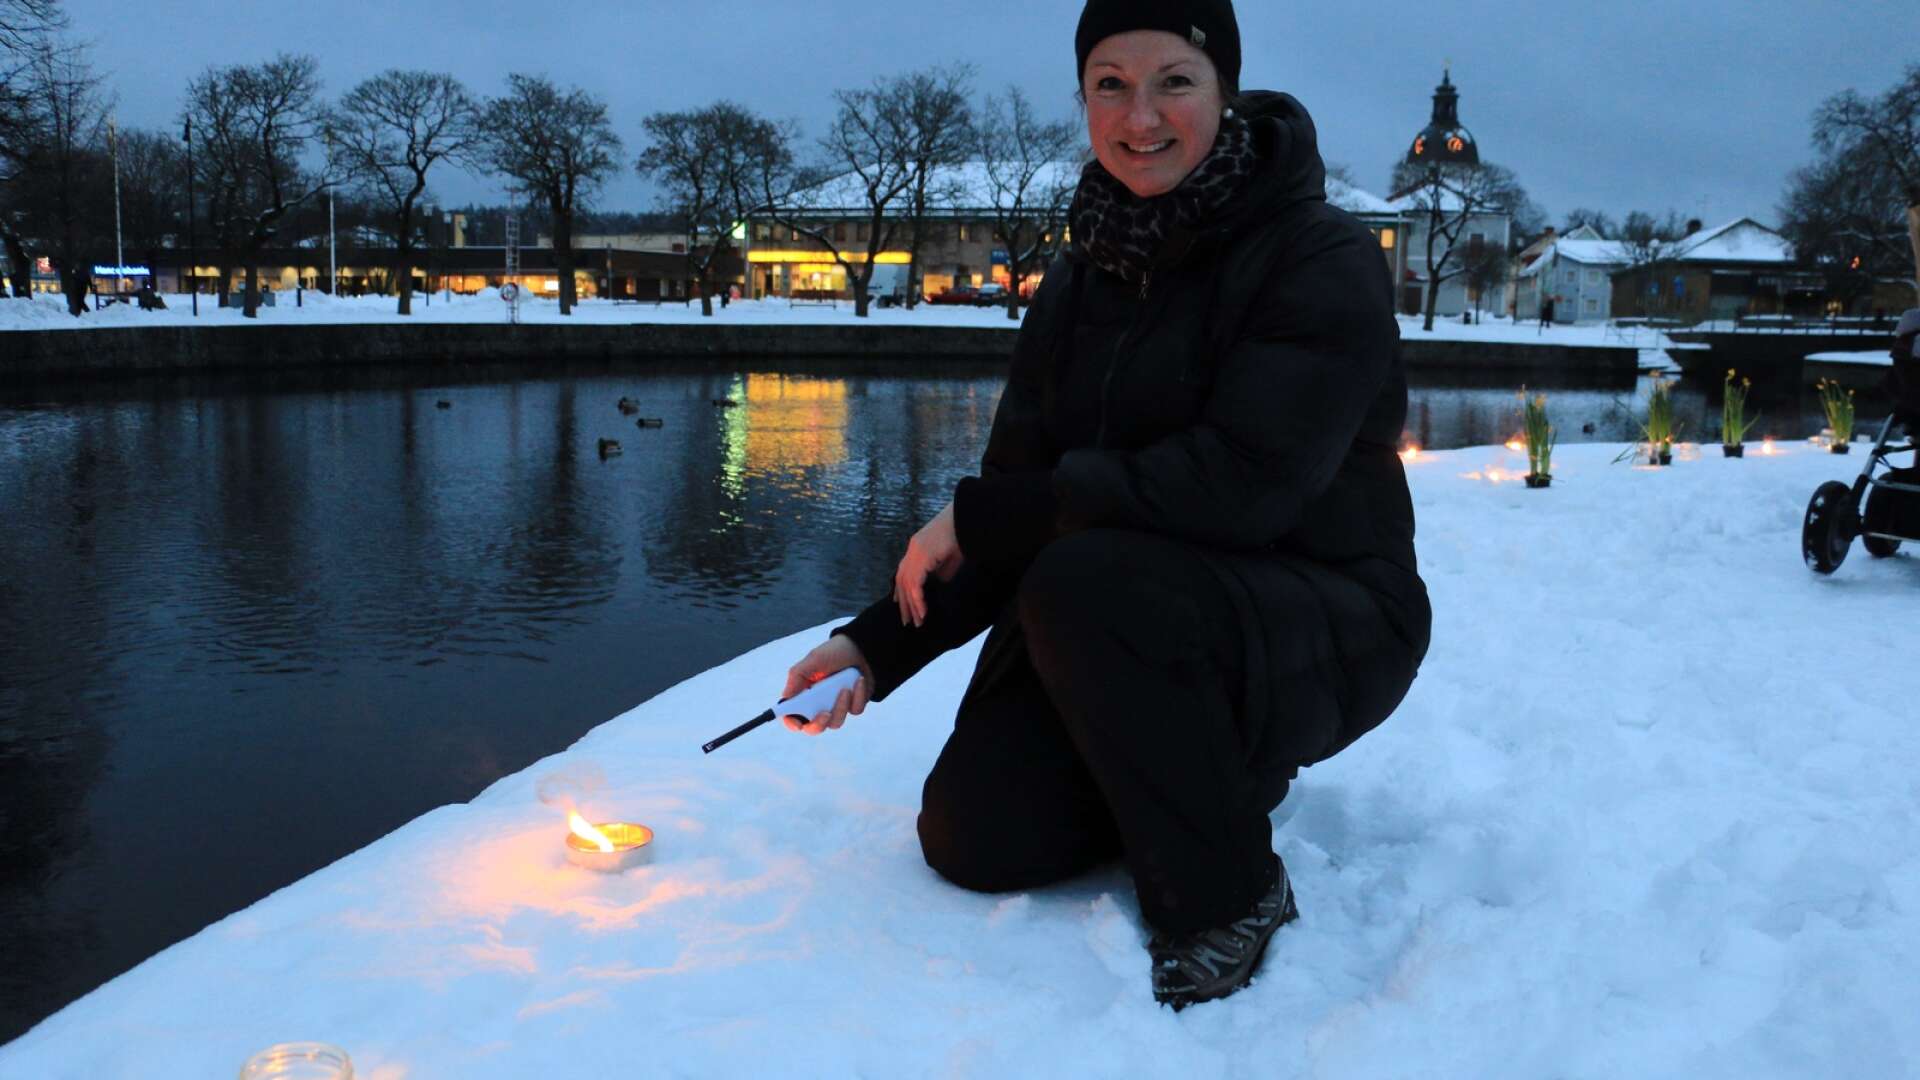 Perina Österberg jobbar som joursamordnare för Kvinnojouren i Filipstad och Storfors. På kvällen den 8:e mars, Internationella kvinnodagen, anordnar jouren en ljusmanifestation på Monitorholmen i Filipstad.